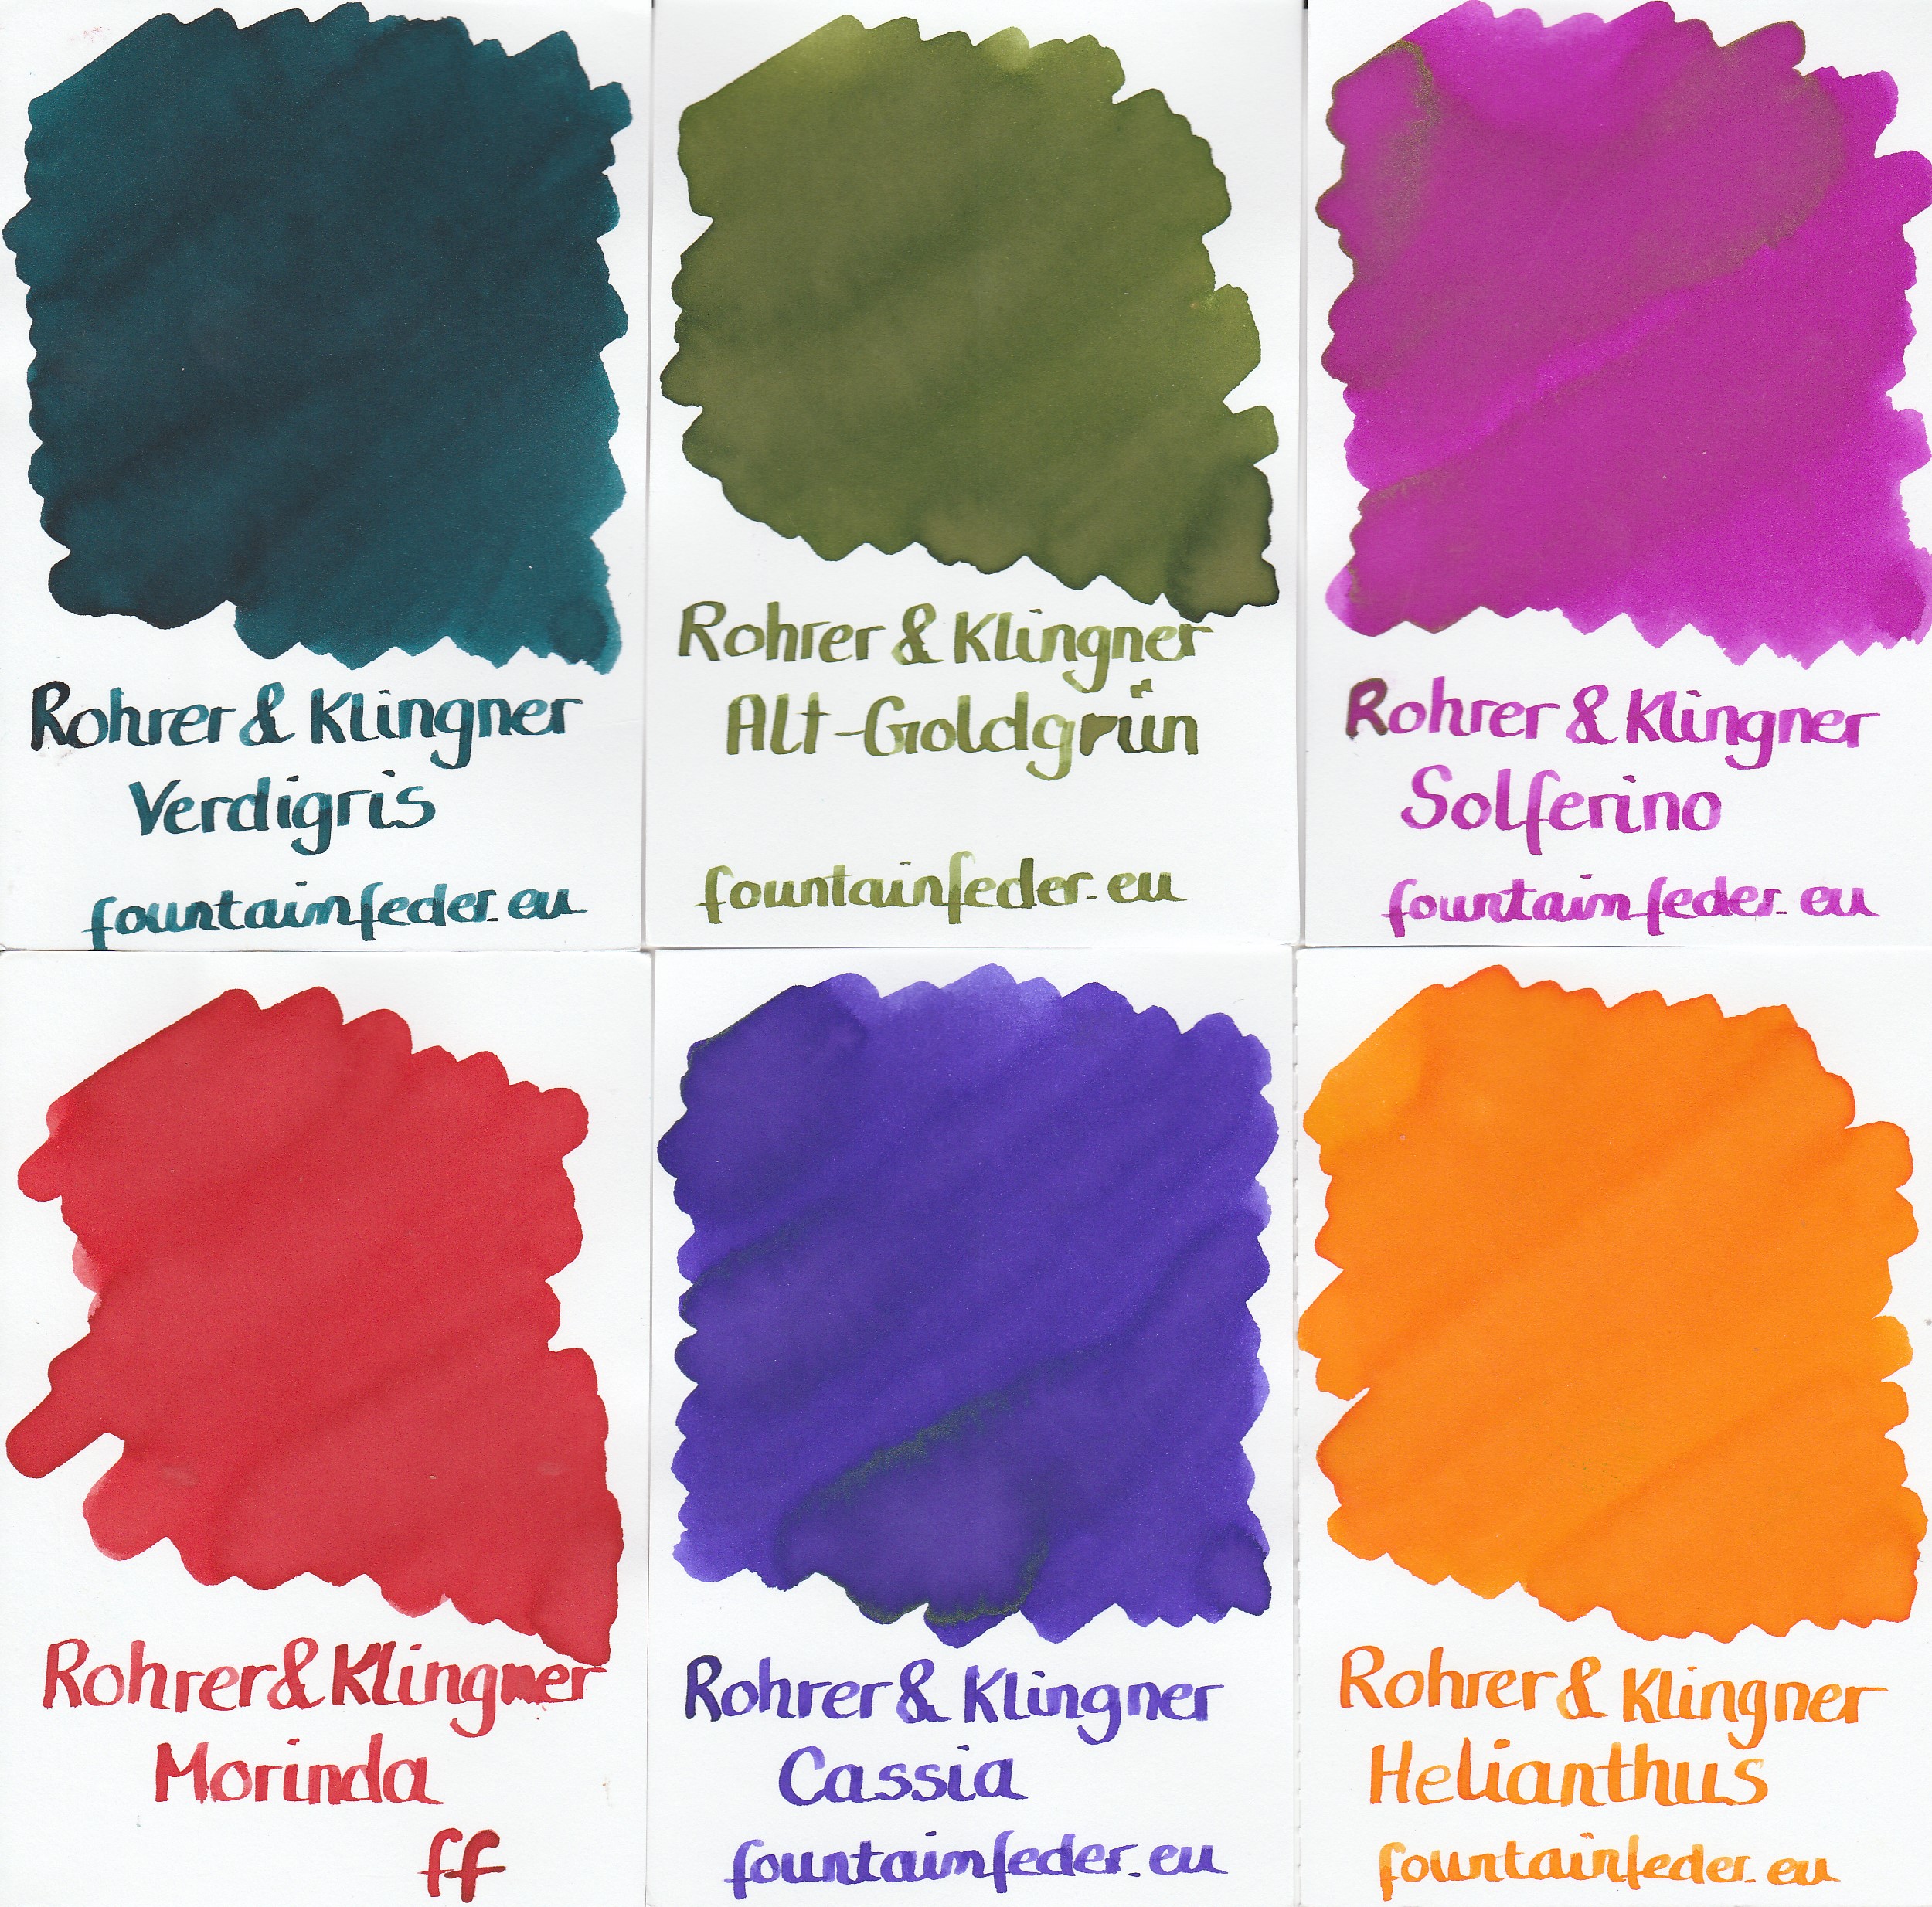 Rohrer & Klingner Blue Permanent Ink Sample 2ml  